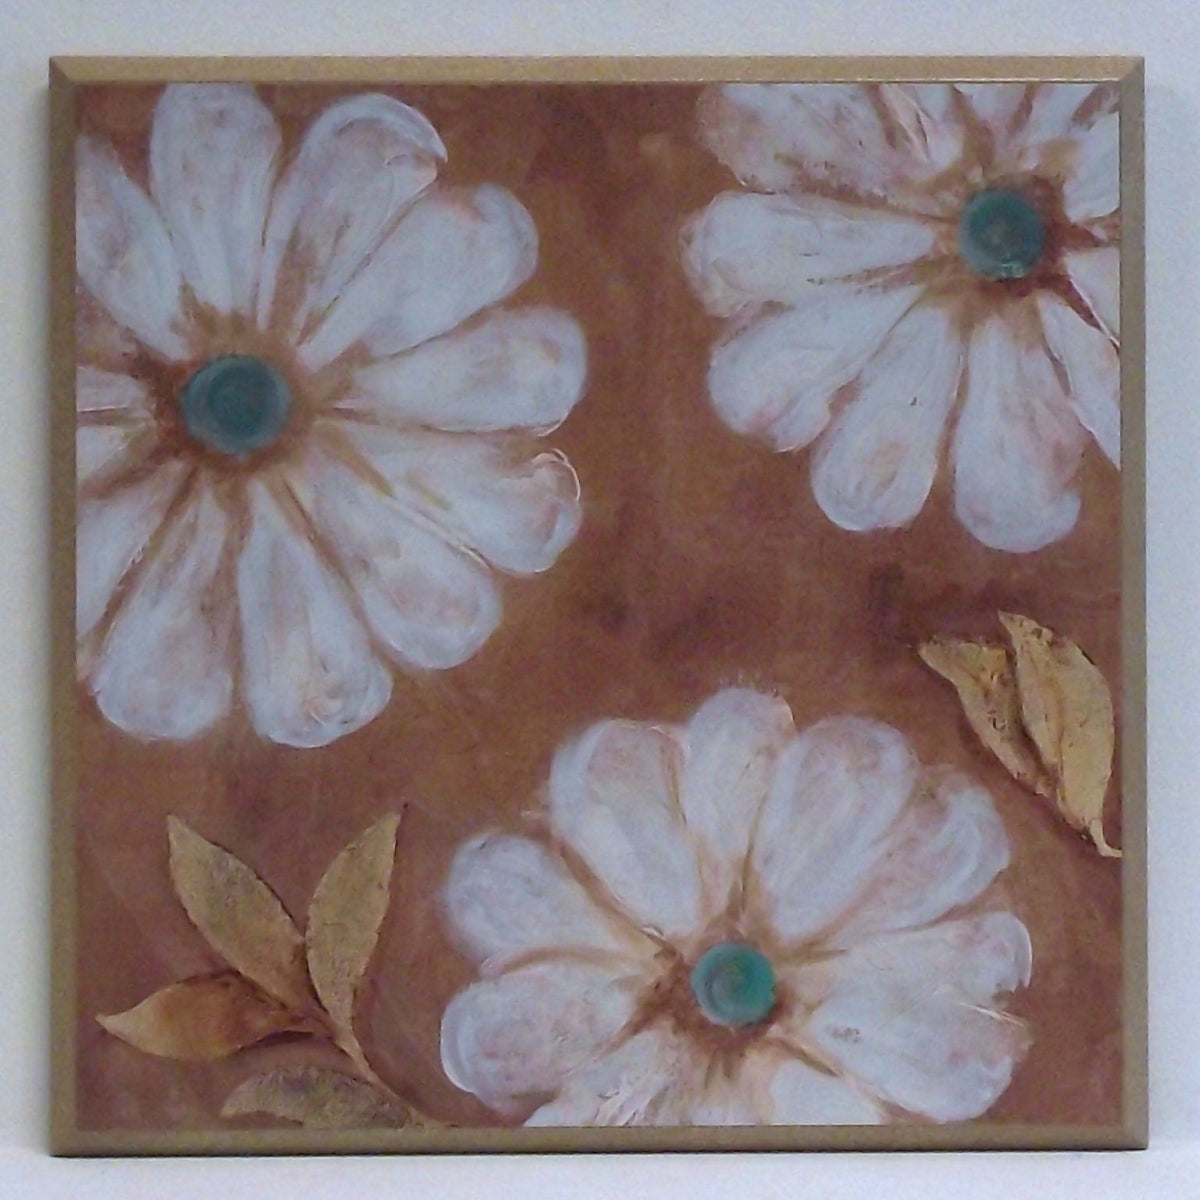 Obraz - Duże białe kwiaty - reprodukcja na płycie A9917 31x31 cm - Obrazy Reprodukcje Ramy | ergopaul.pl